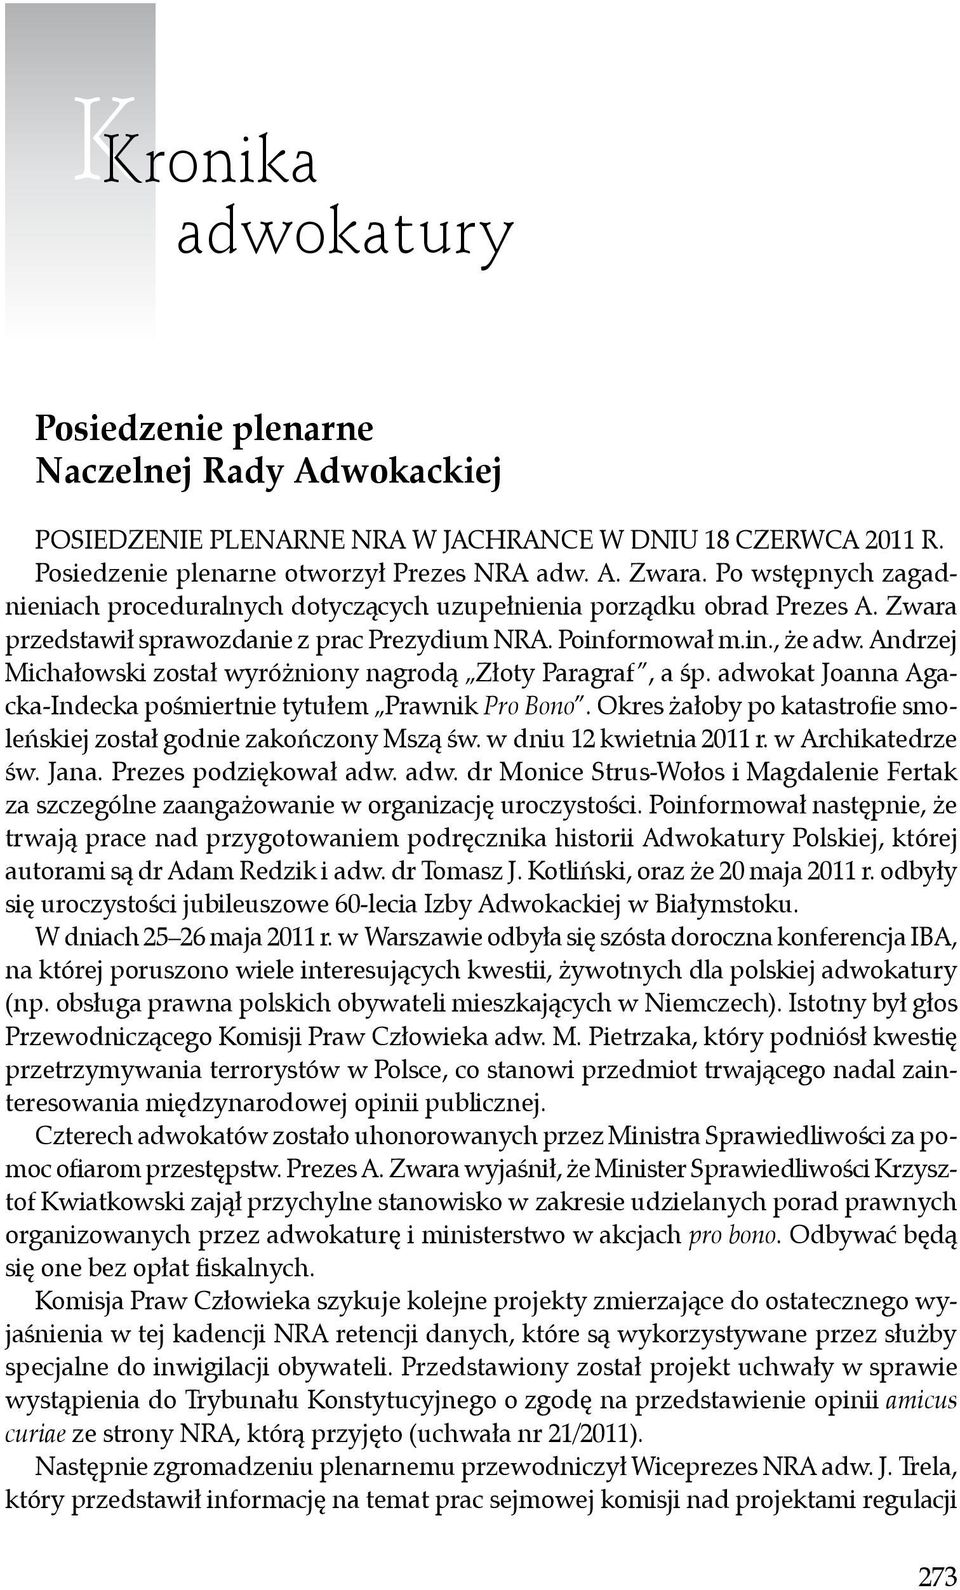 Andrzej Michałowski został wyróżniony nagrodą Złoty Paragraf, a śp. adwokat Joanna Agacka-Indecka pośmiertnie tytułem Prawnik Pro Bono.